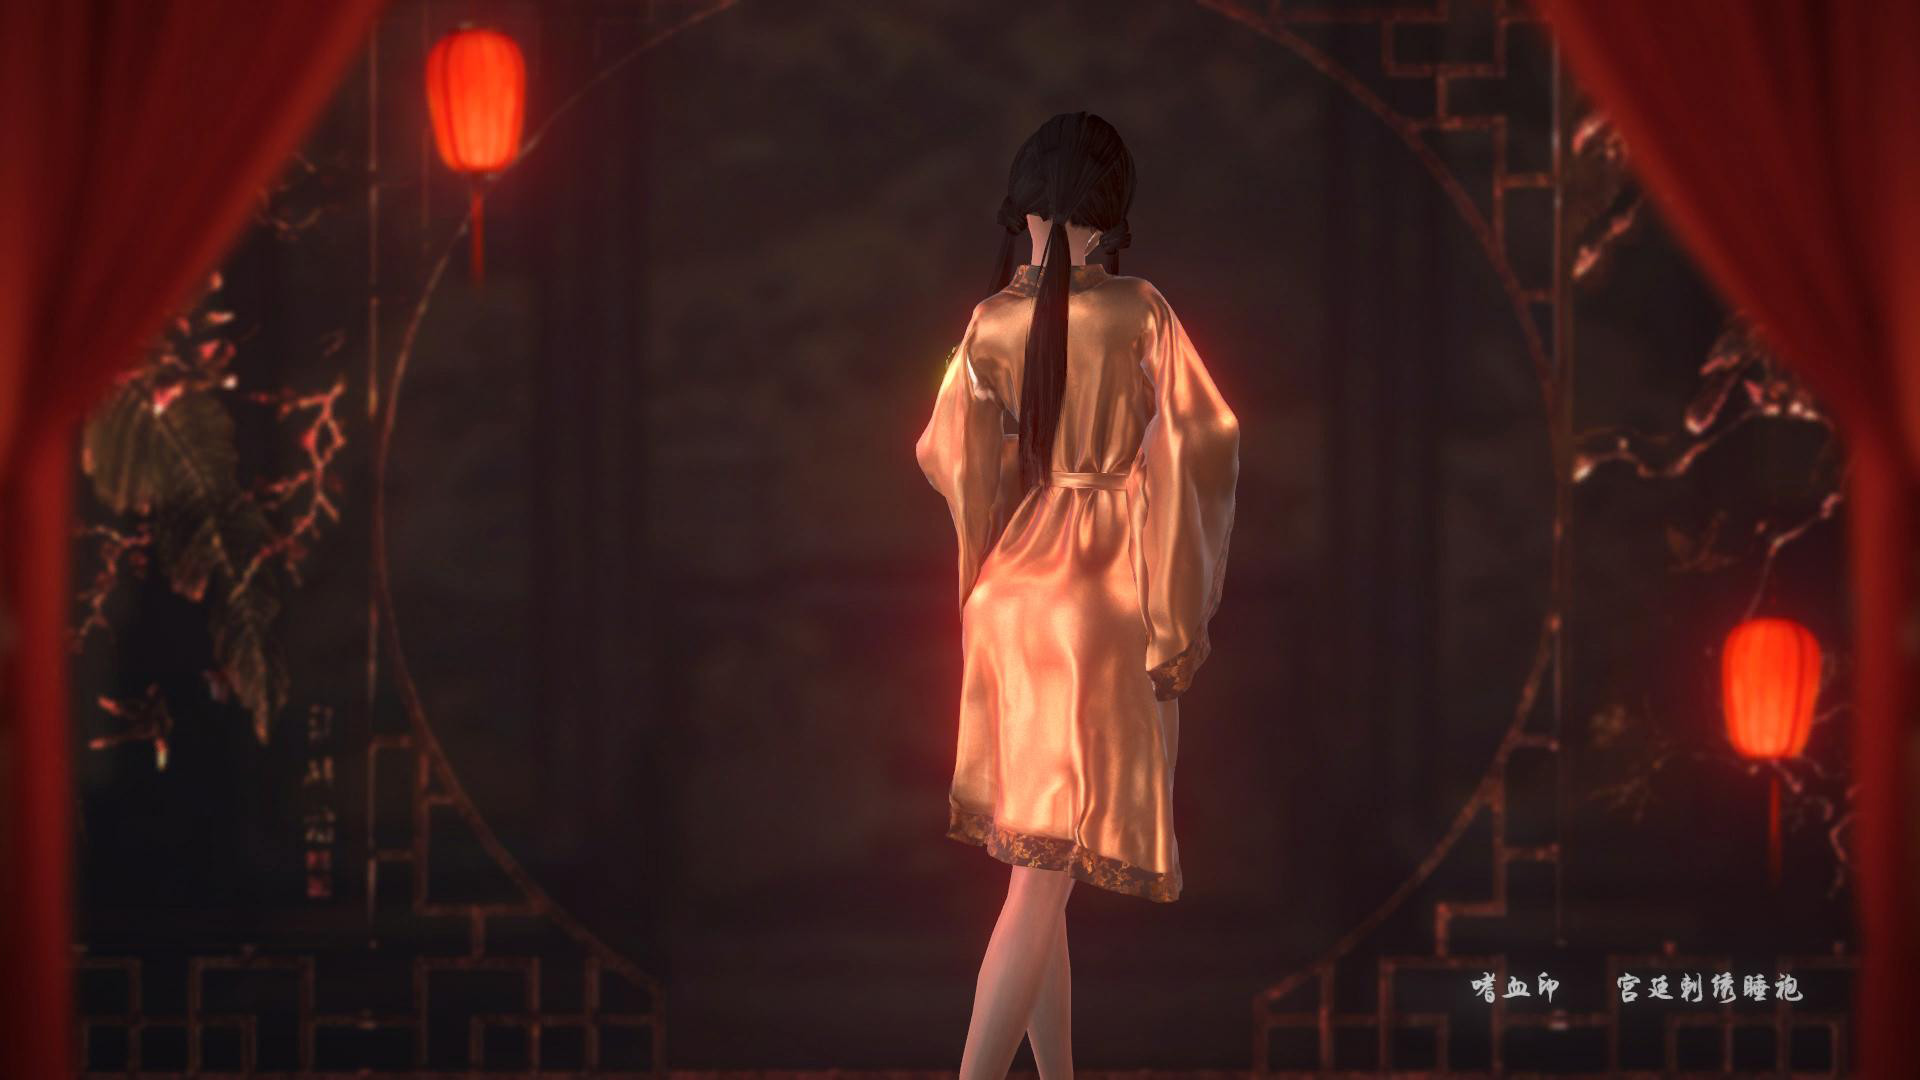 嗜血印欣赏宫殿绣花睡衣DLC的屏幕截图